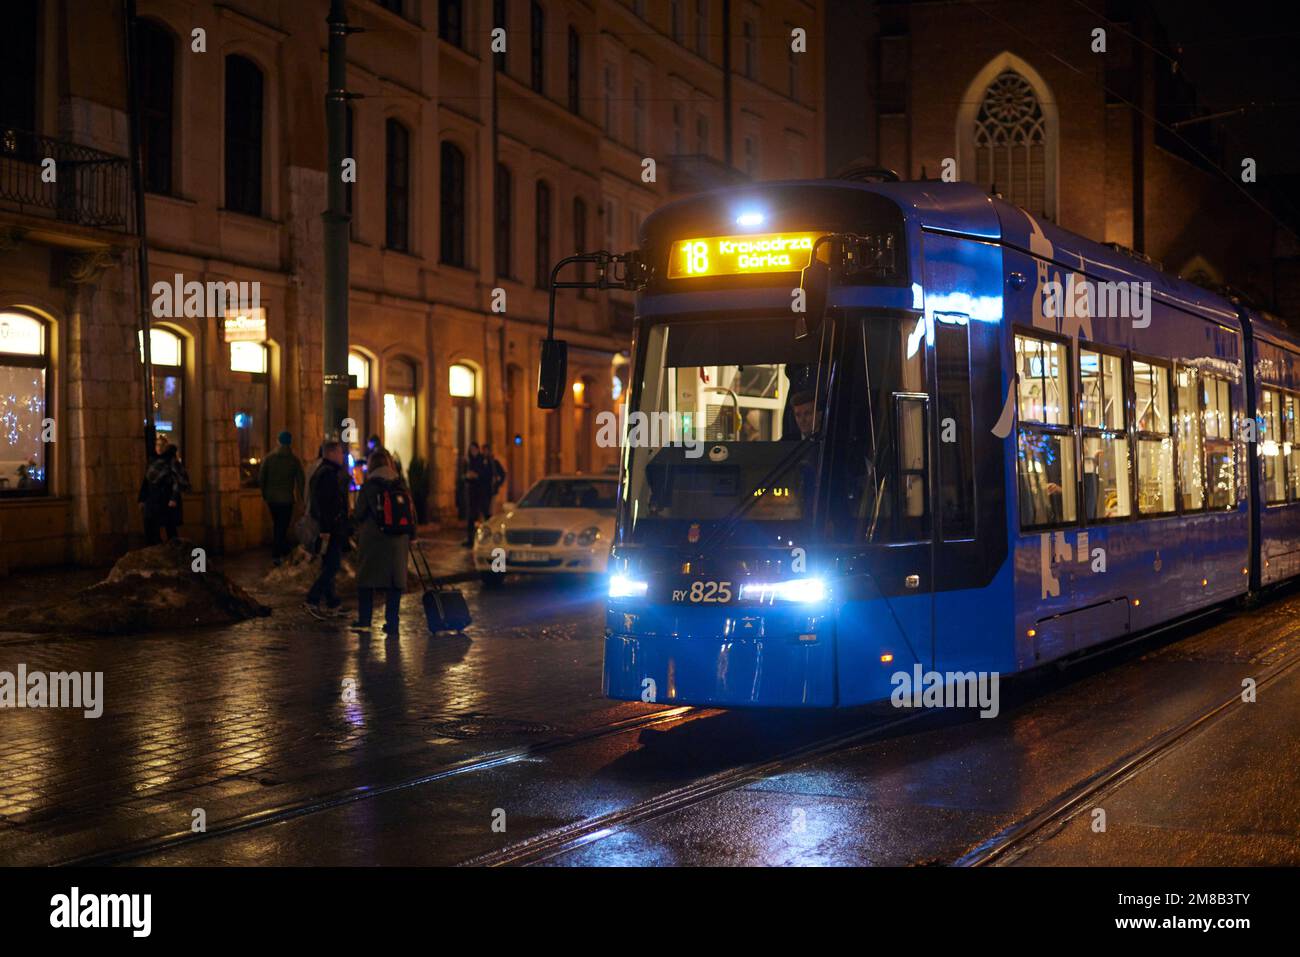 Blaue Straßenbahn am Abend in Krakau mit beleuchteten Fenstern und Menschen. Polnische Architektur, orangefarbenes Licht aus Laternen und Reflexionen. Stockfoto